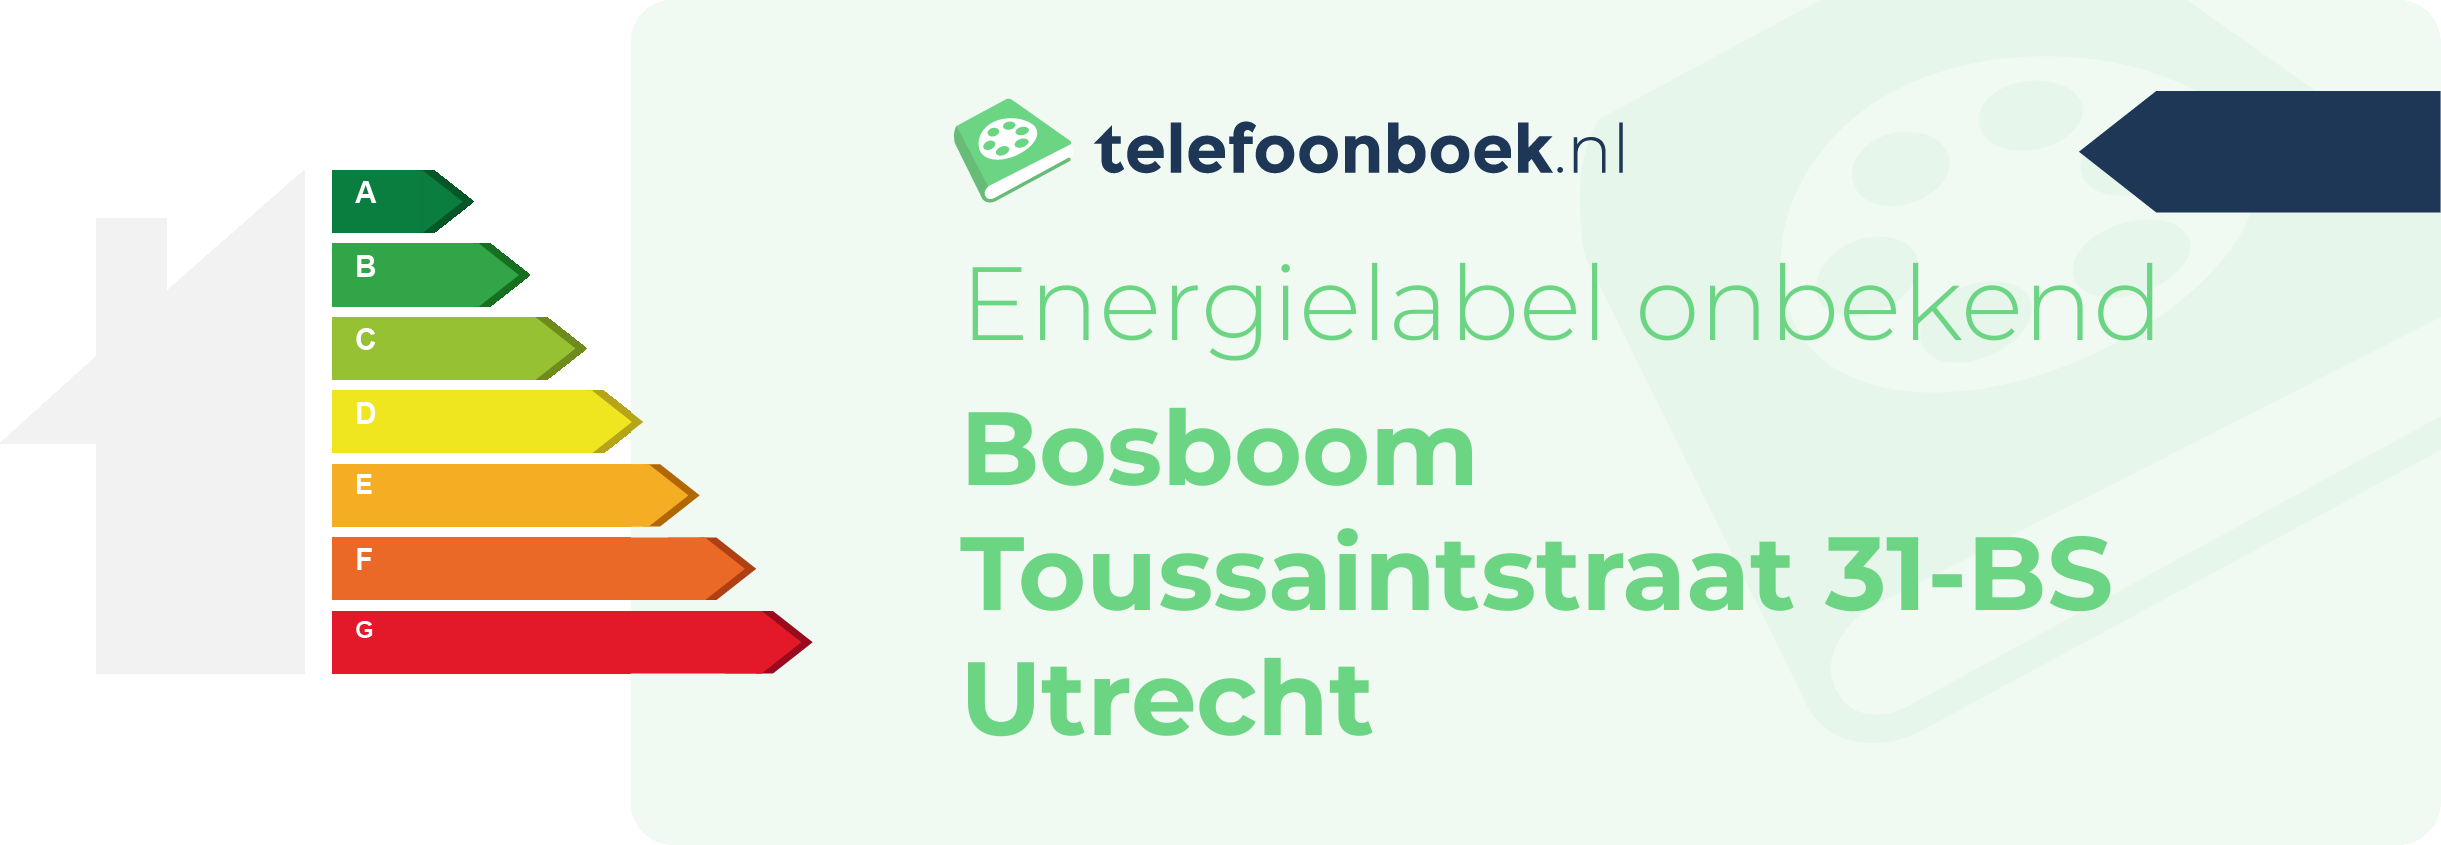 Energielabel Bosboom Toussaintstraat 31-BS Utrecht